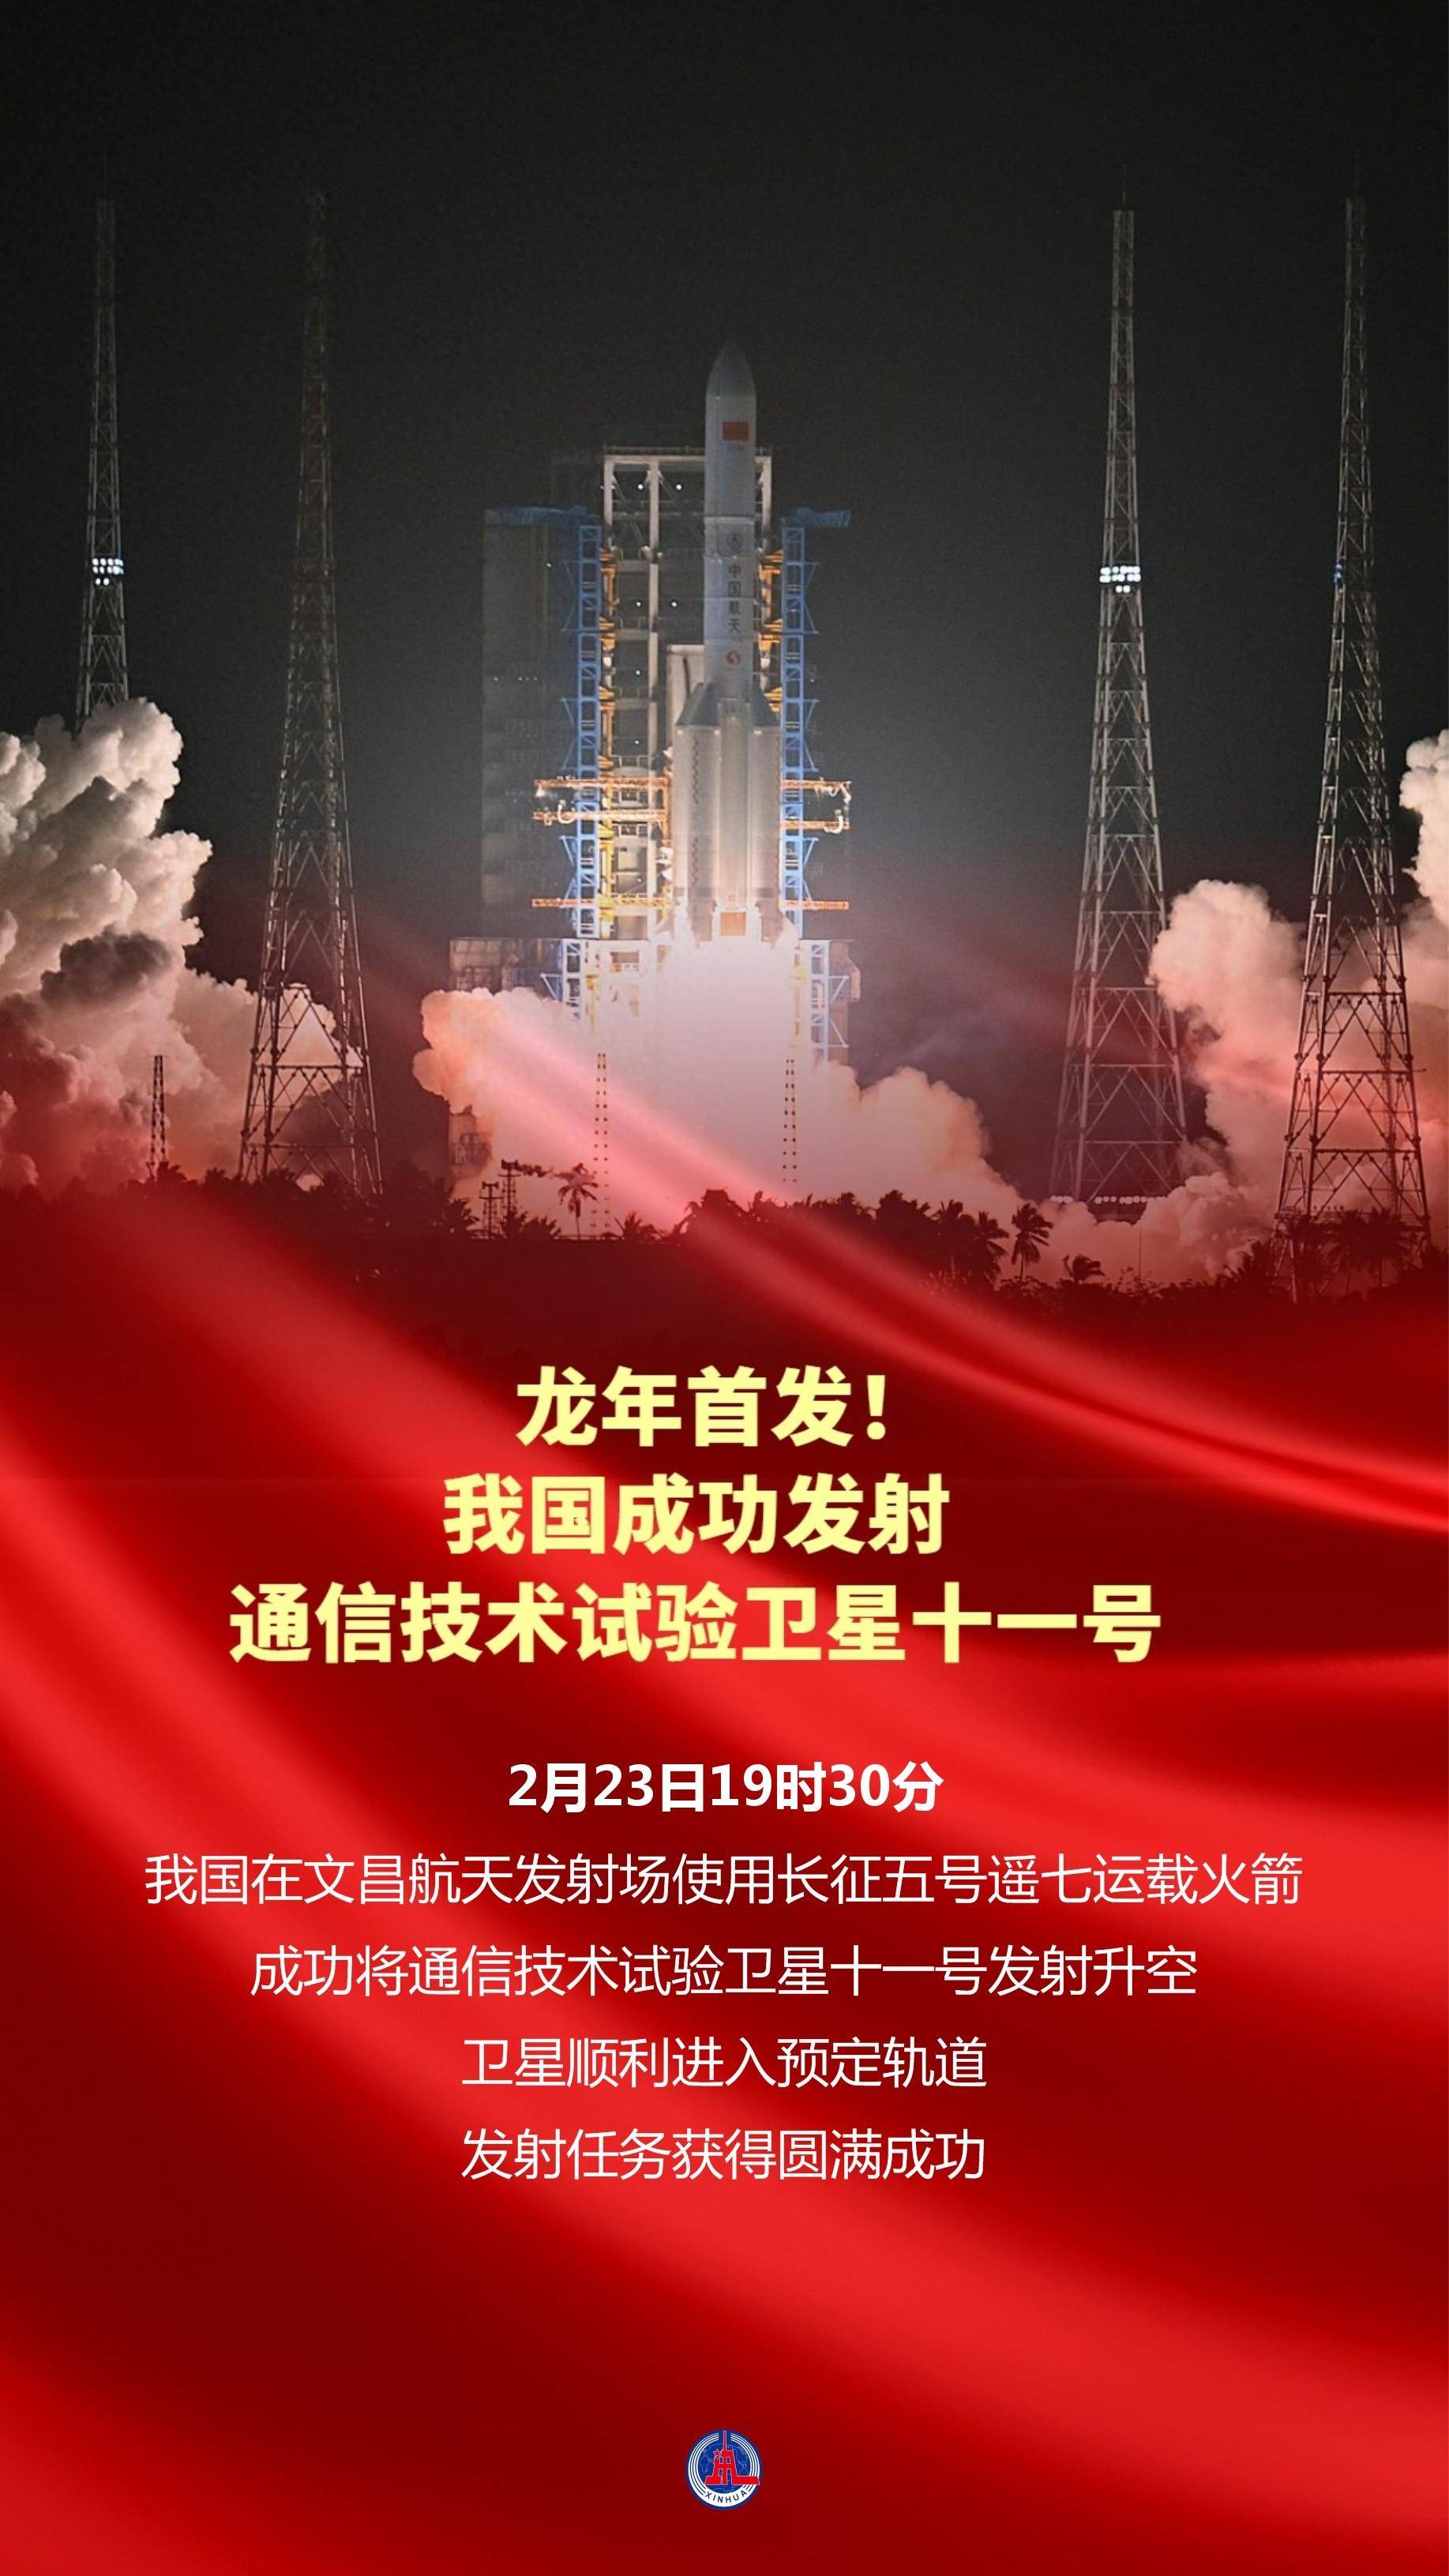 我国在文昌航天发射场使用长征五号遥七运载火箭,成功将通信技术试验